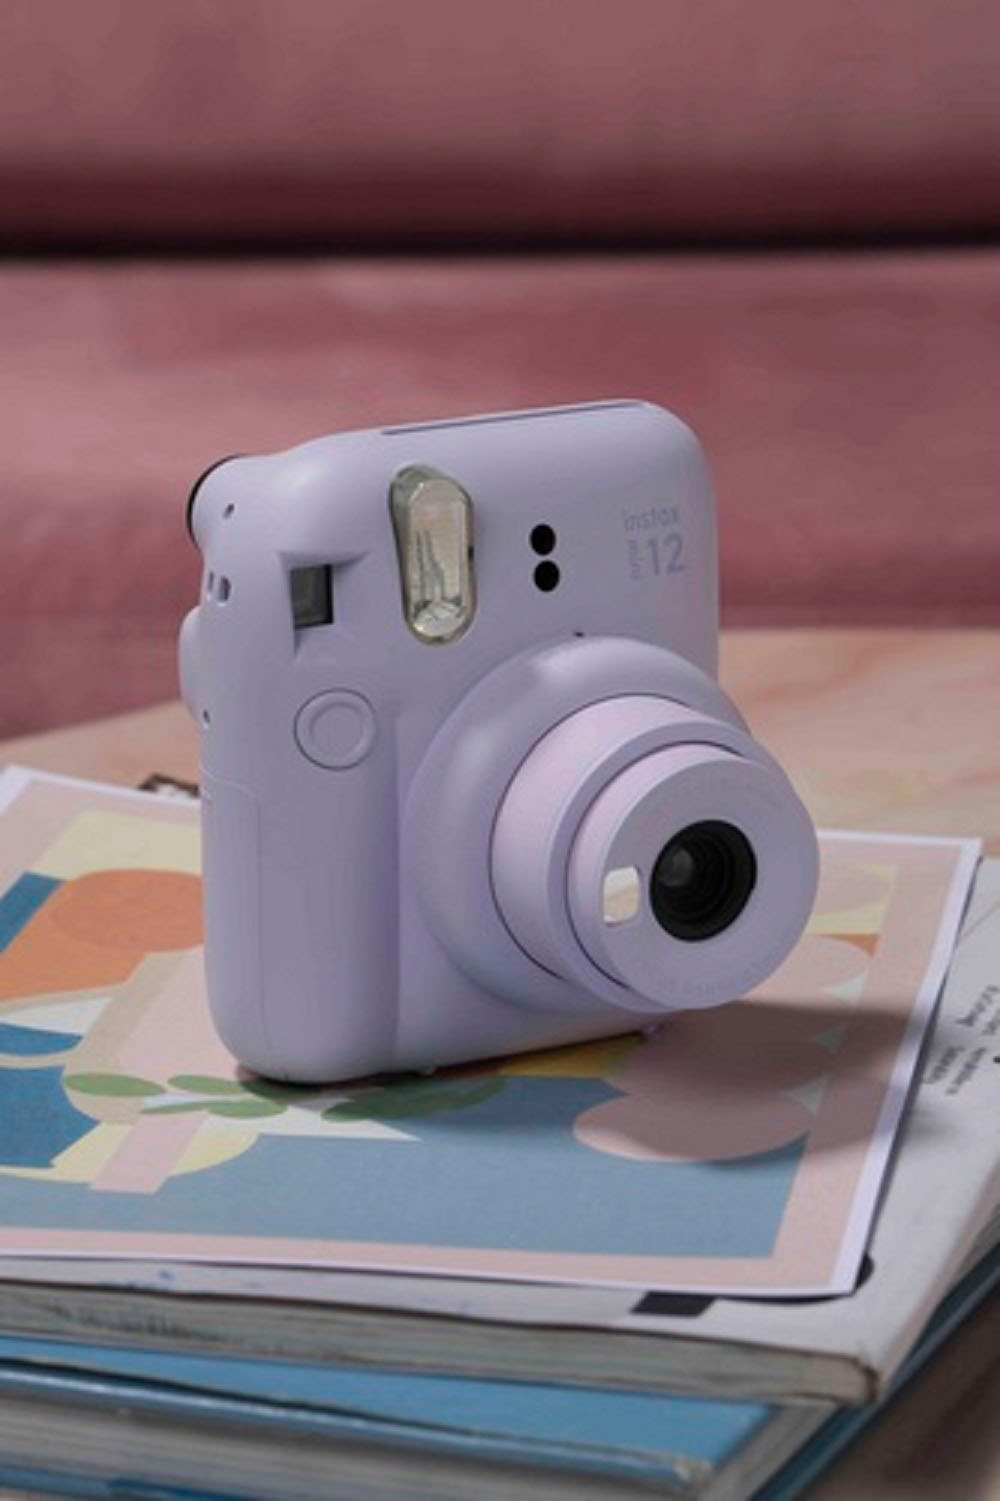 Cámara instantánea Fujifilm Instax mini 12 lila